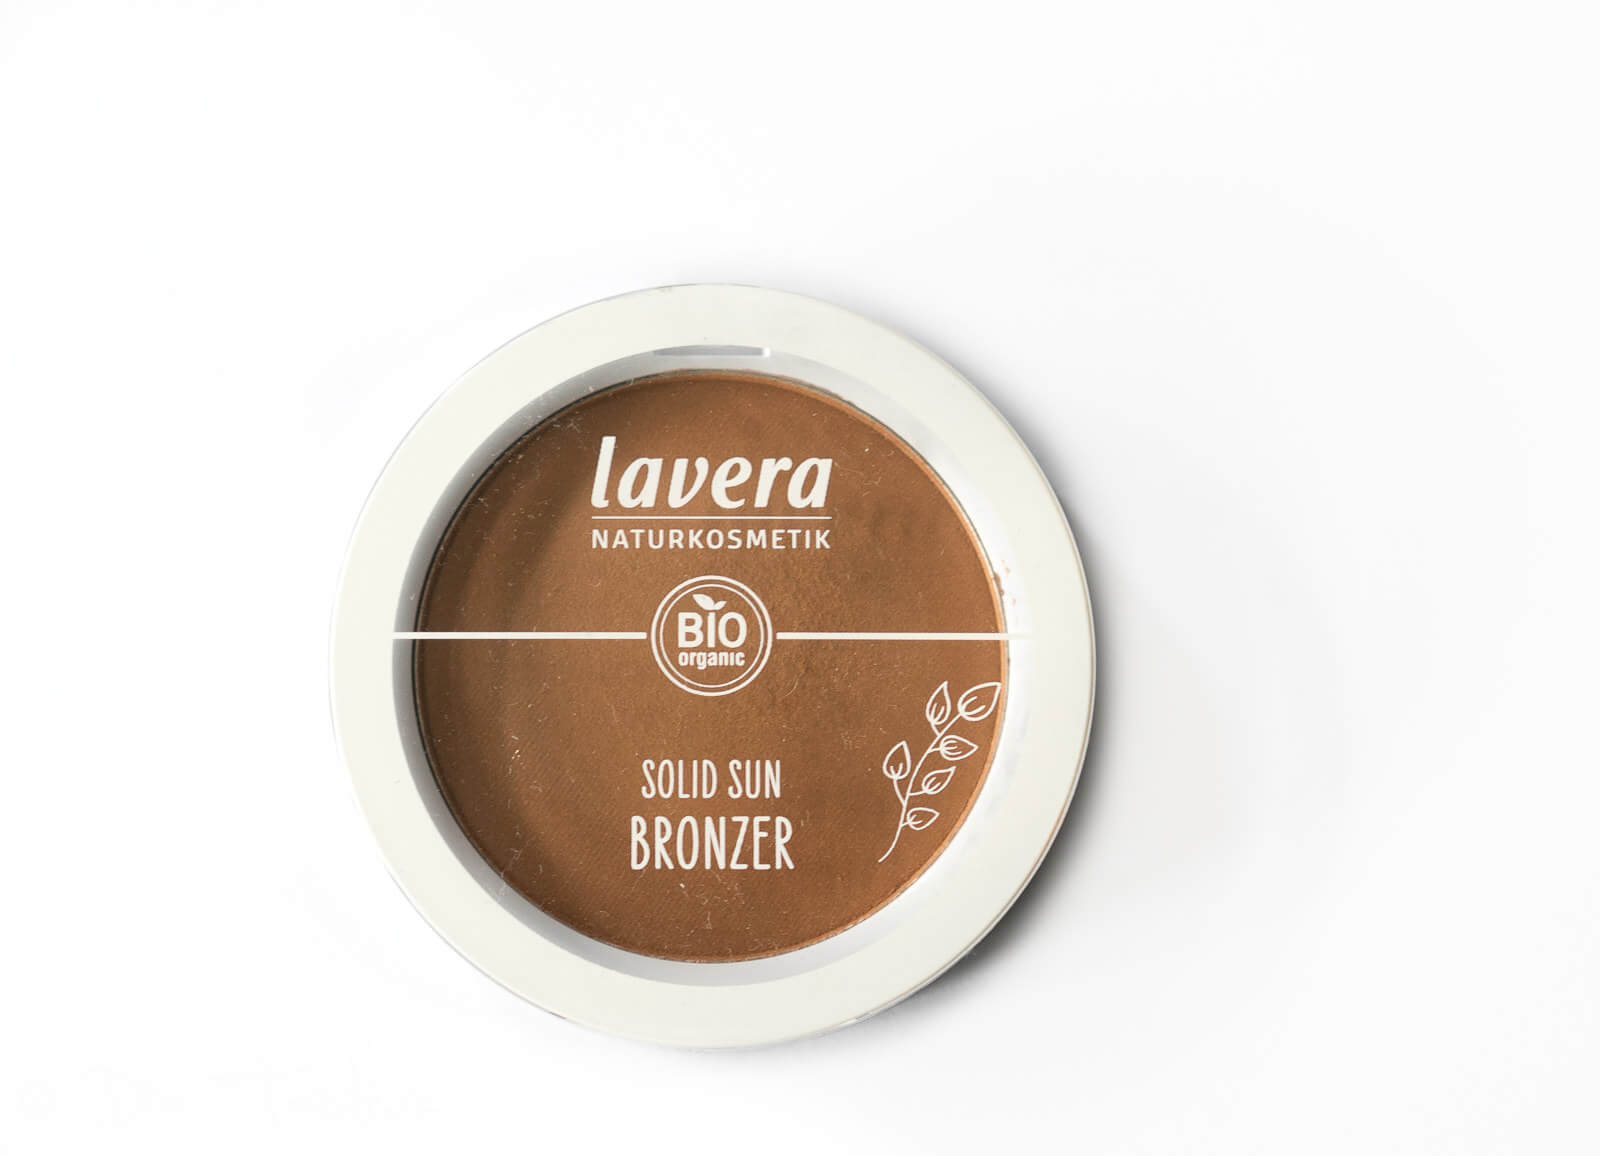 lavera - Dekorative Kosmetik - Neu im Sortiment - Bronzer, Rouge, Grundierung und Eyeshadows 22